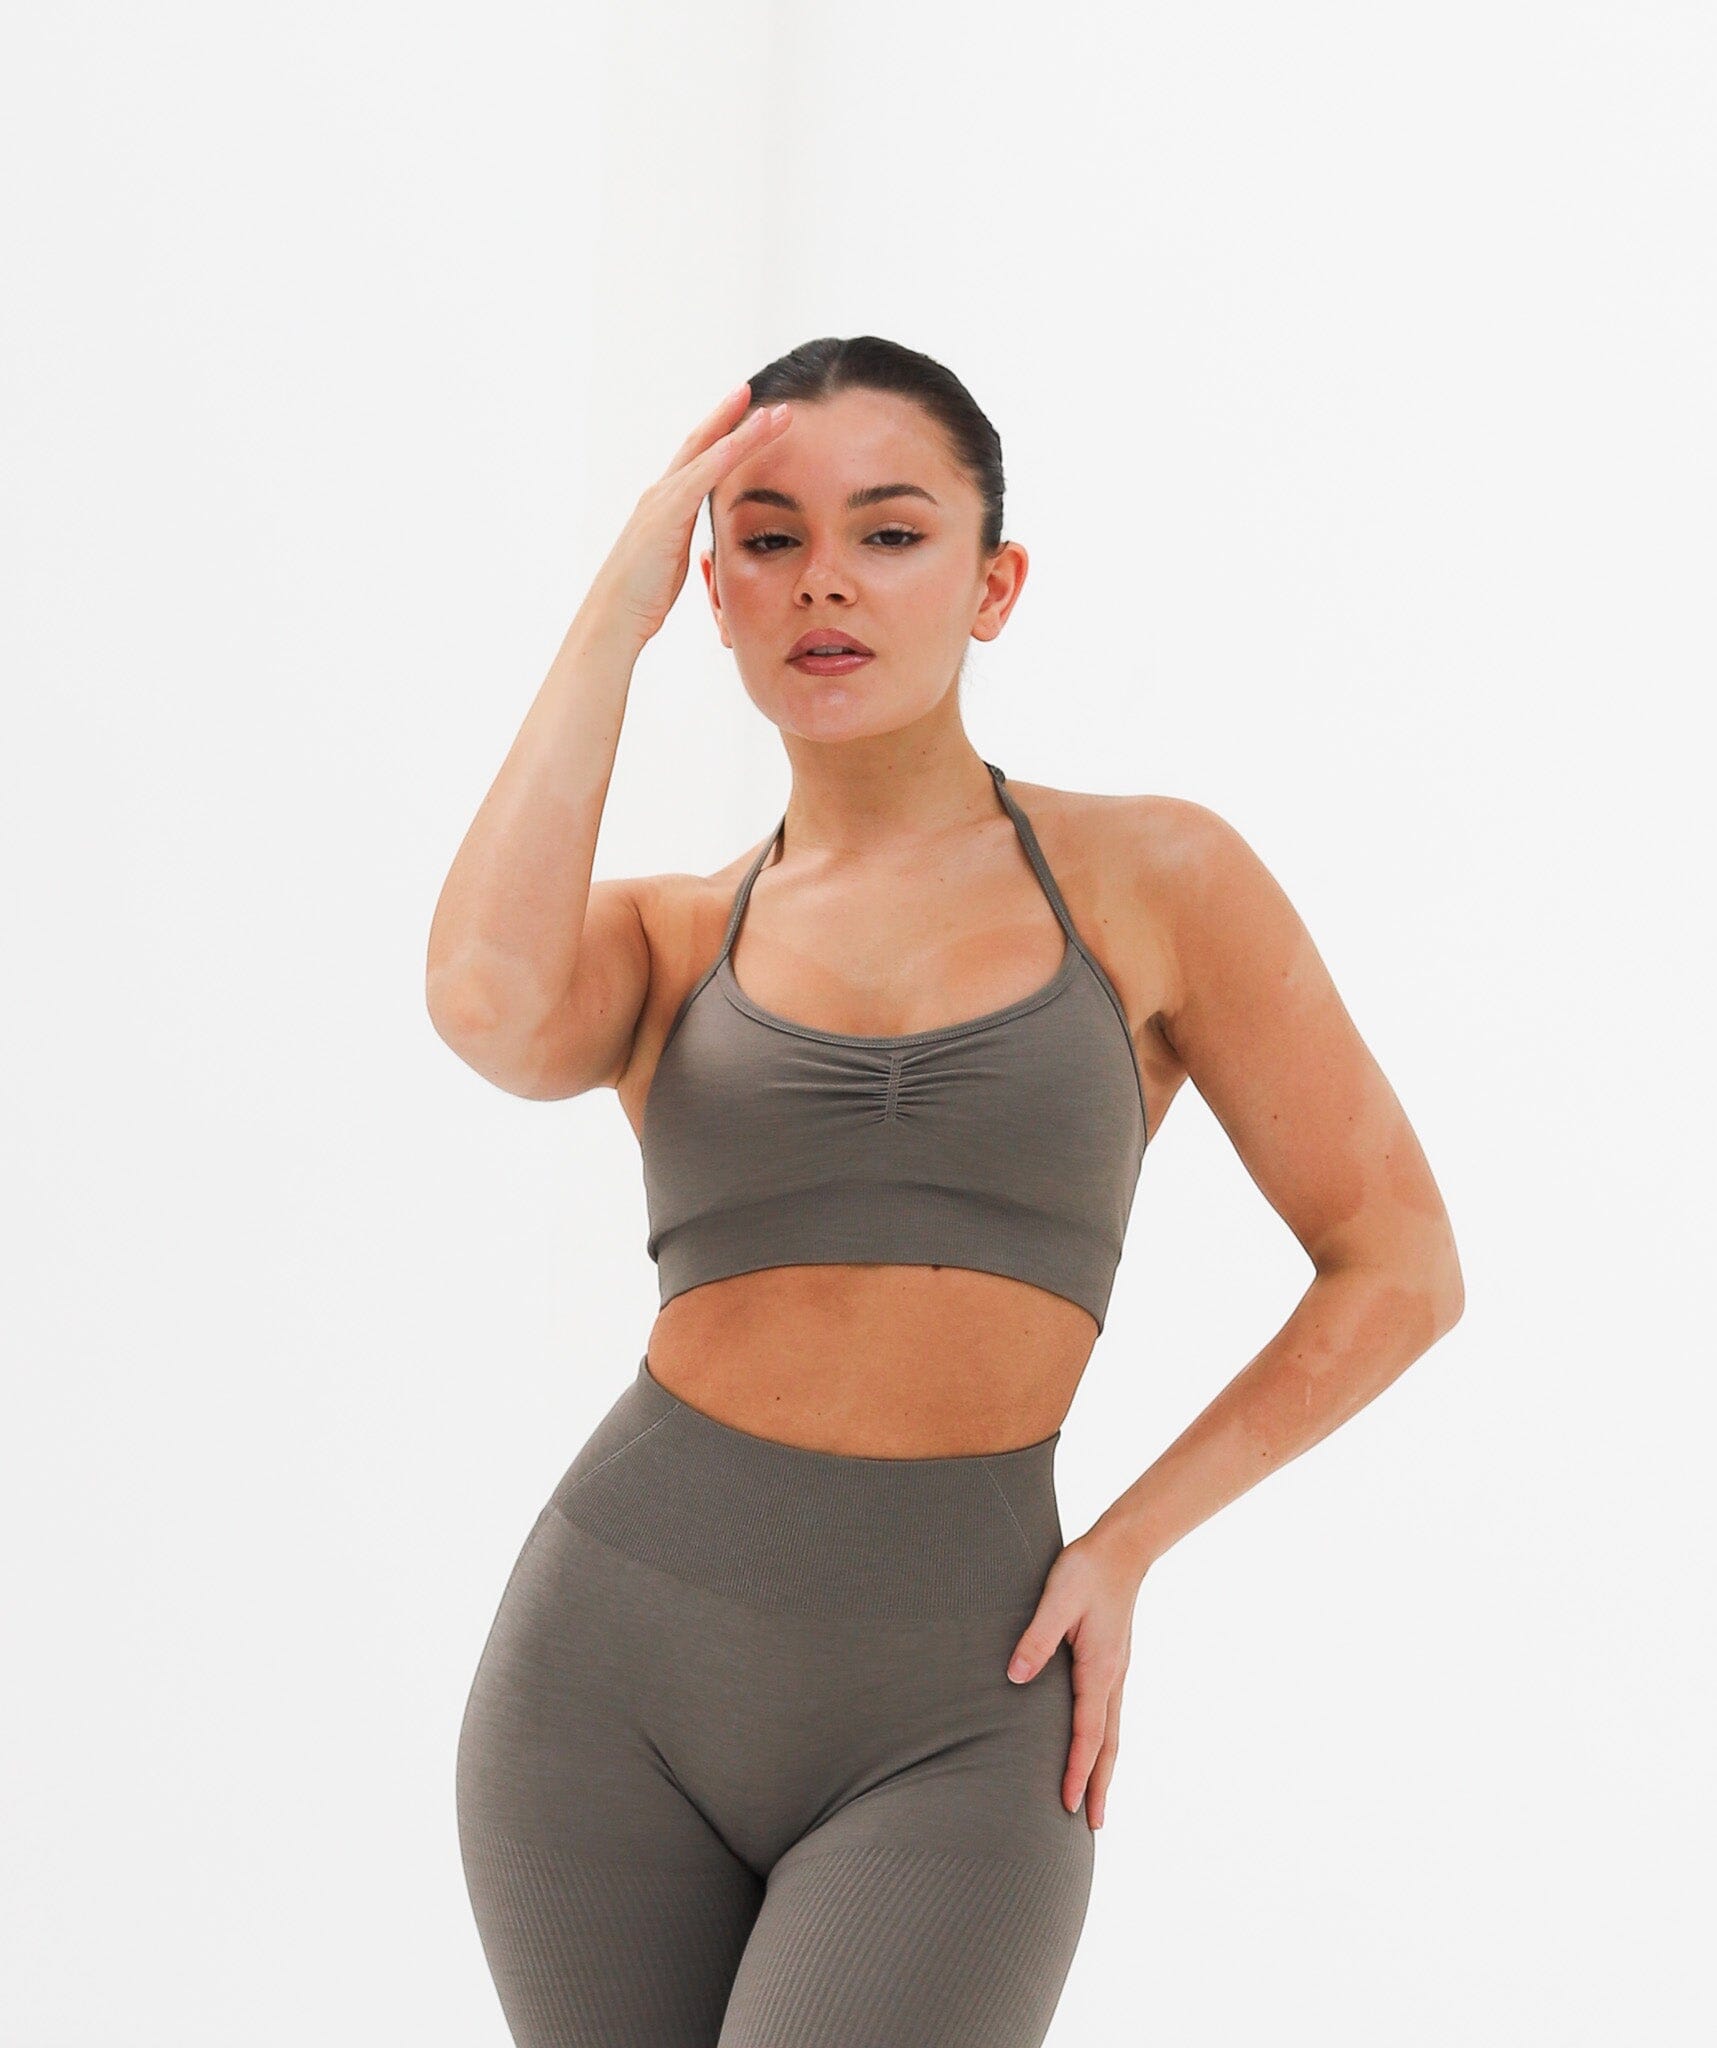 Werk - Aura Dance Bra Top - Grey Activewear Crop Top with Scoop Neck – Werk  Dancewear